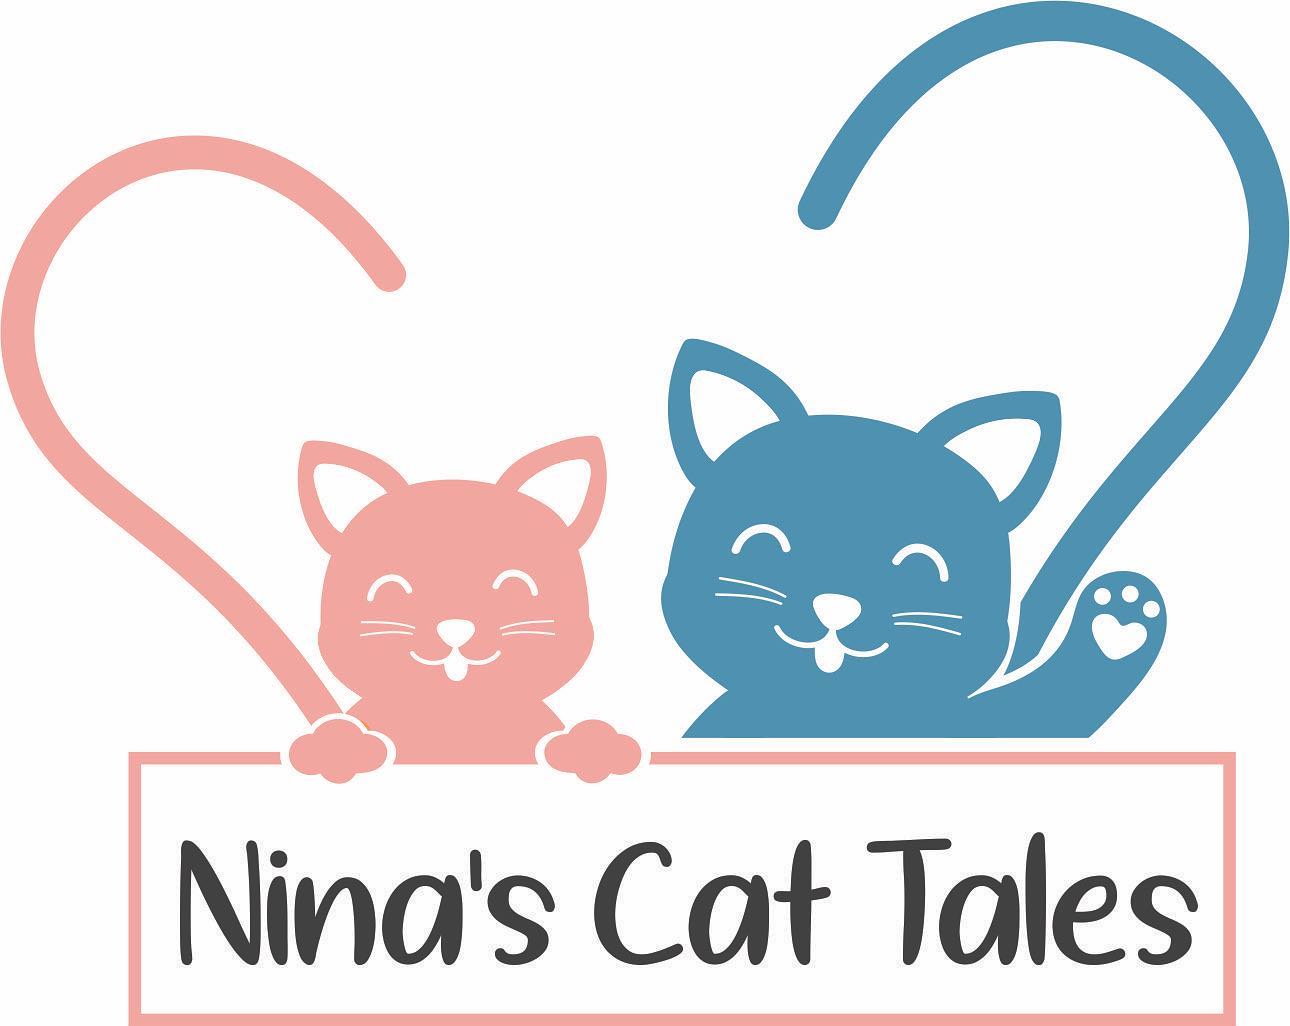 Nina's Cat Tales